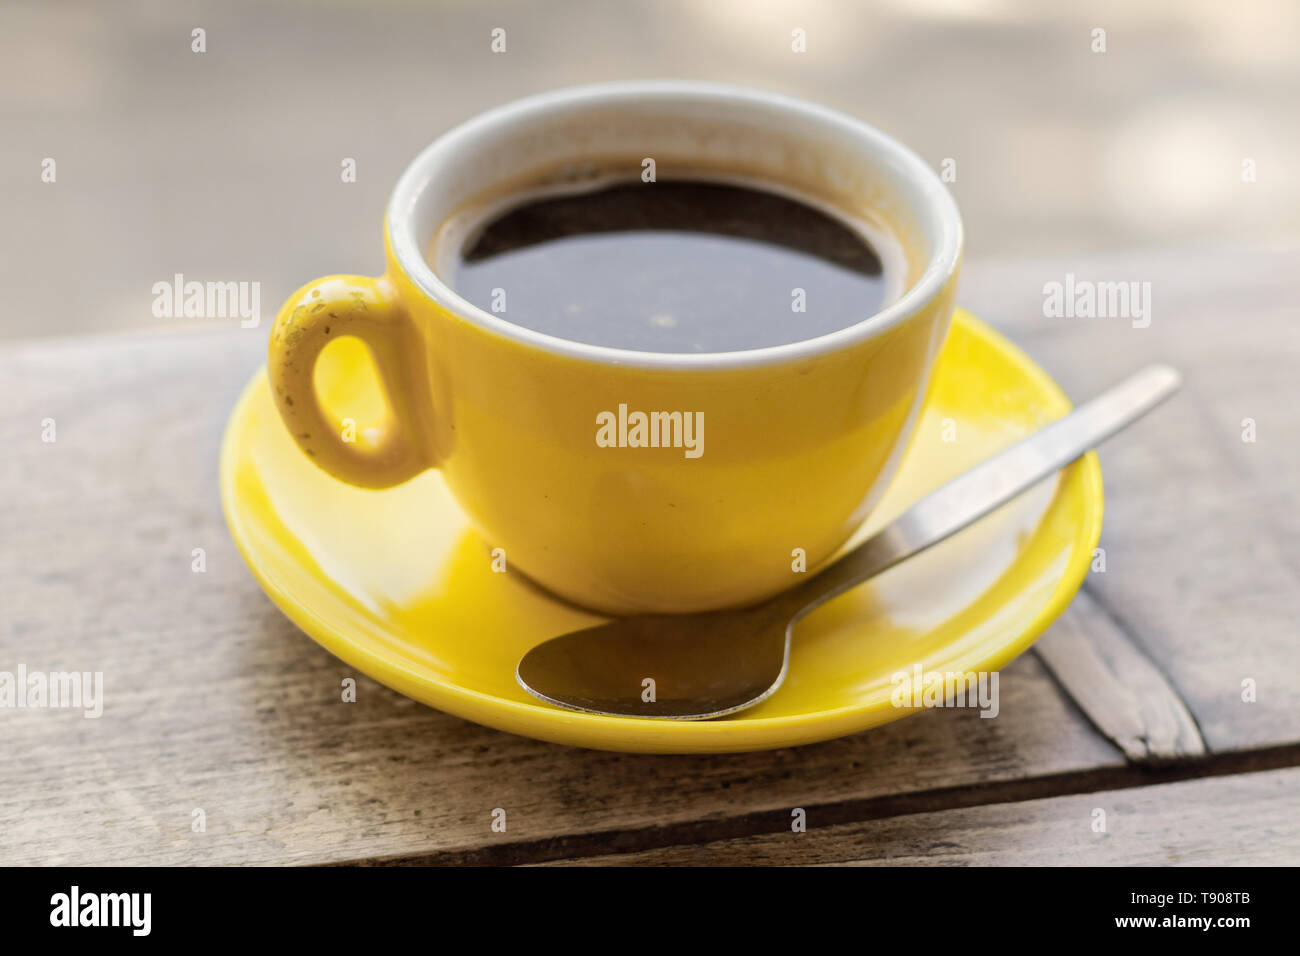 Jaune ébréchée tasse à café et soucoupe sur une table en bois, gros plan avec une faible profondeur de champ Banque D'Images